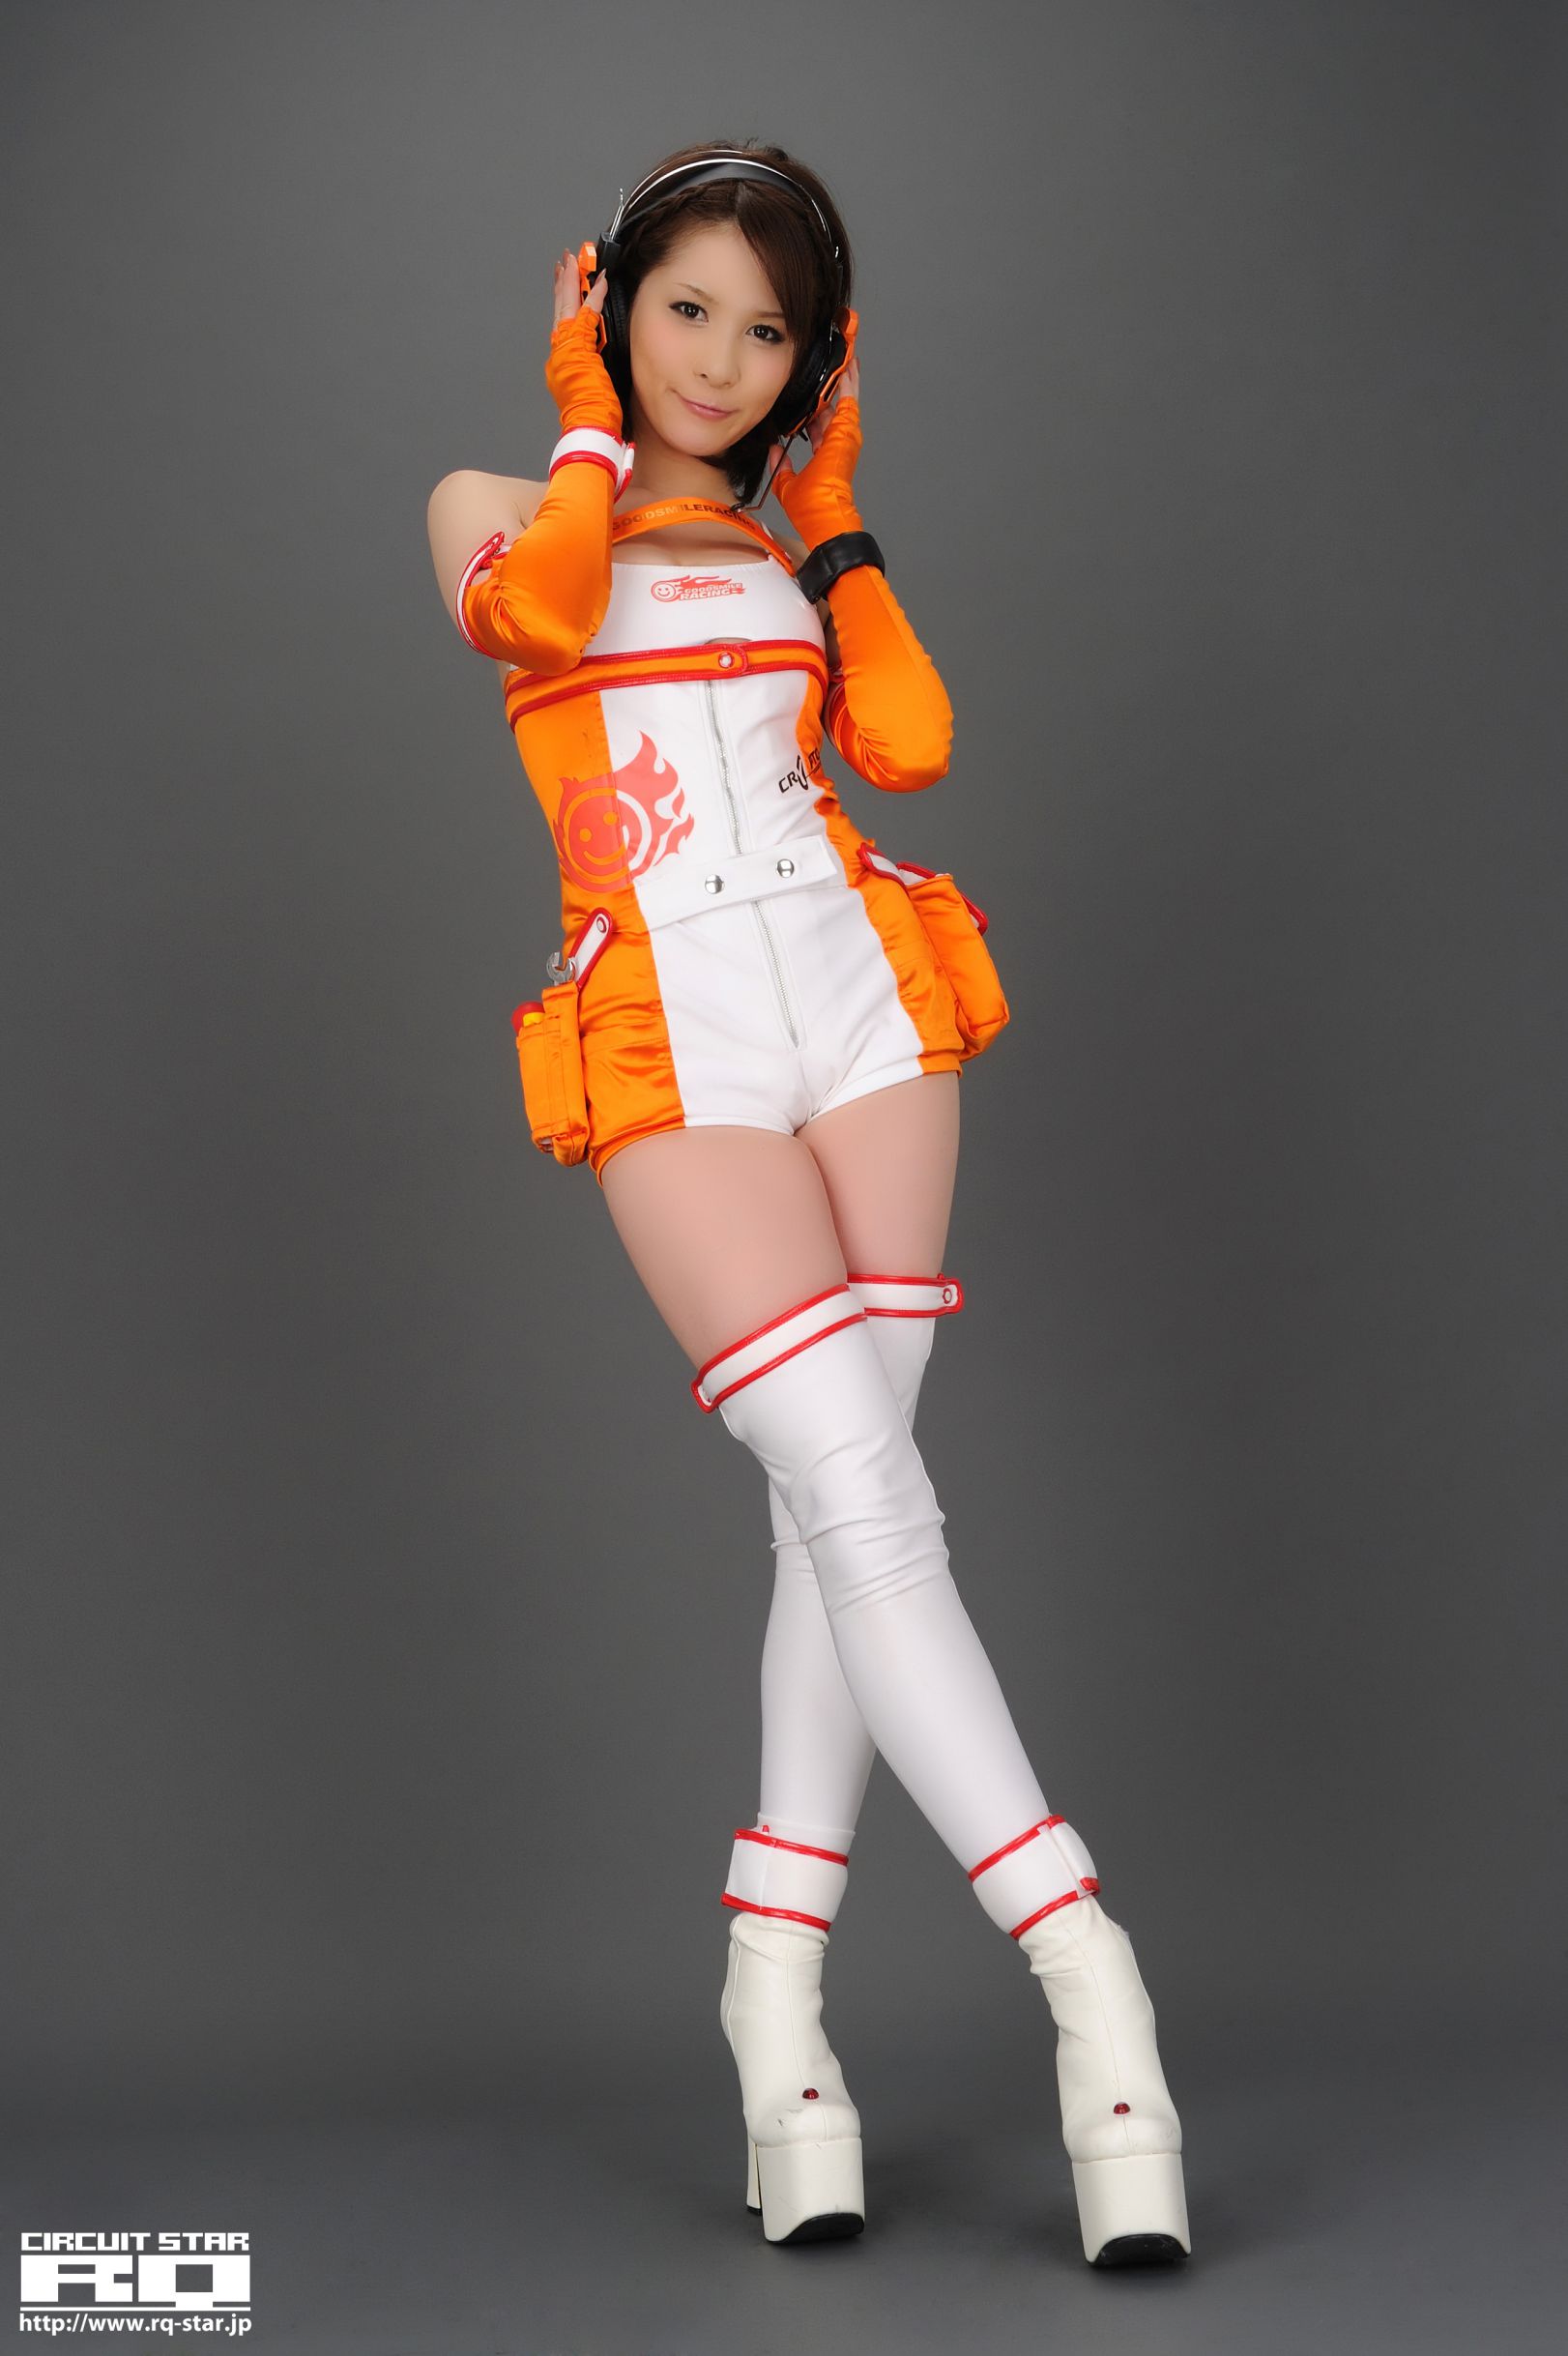 Url model. Tachibana Orange. Фото Saki Tachibana.